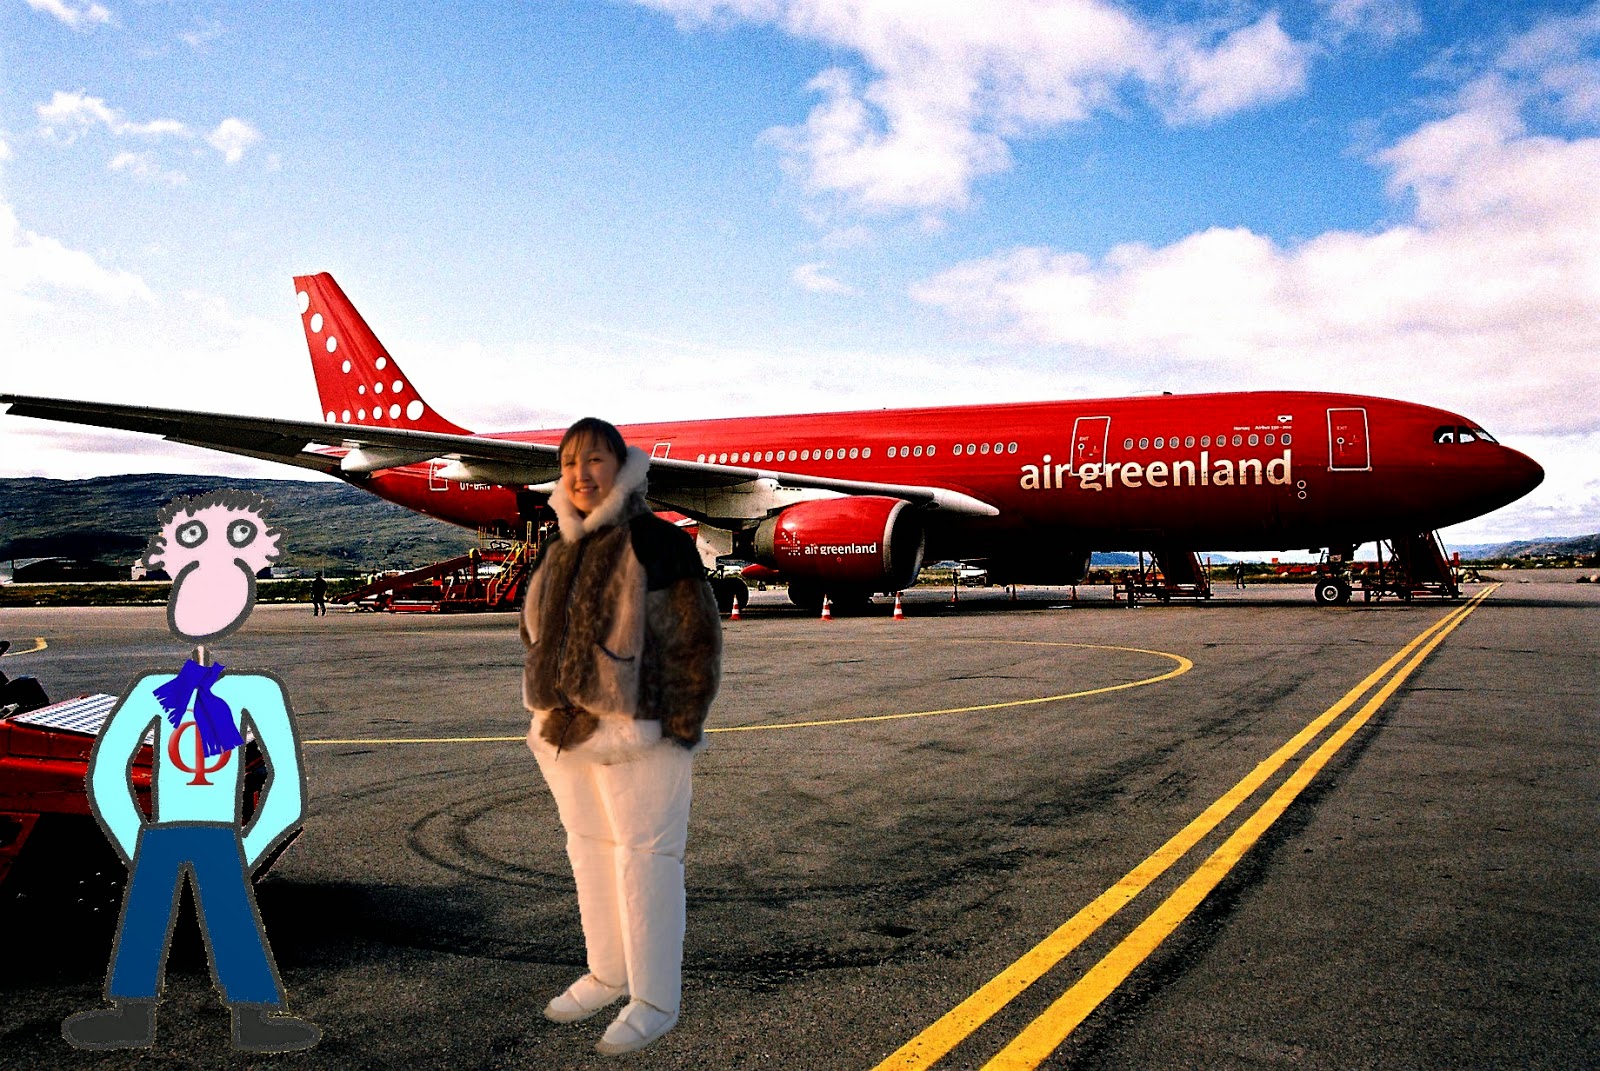 Joe Vitruvius upon arrival at the airport in Nuuk